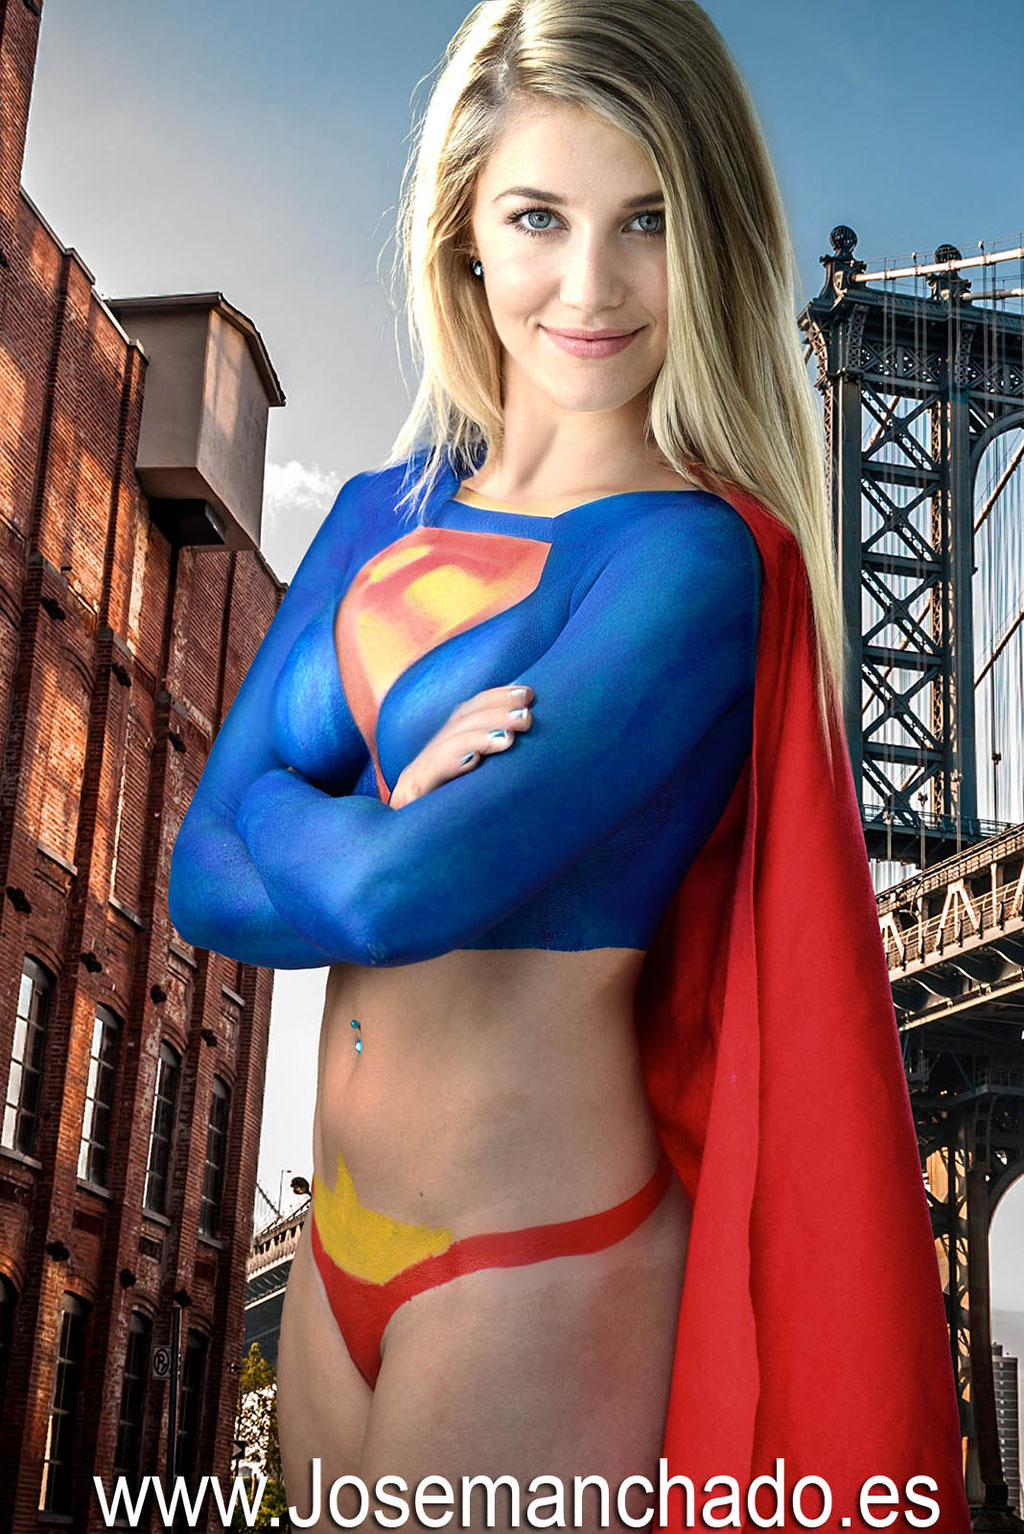 bodypaint supergirl, bodypaint superheroe, bodypaint madrid, book fotos bodypaint